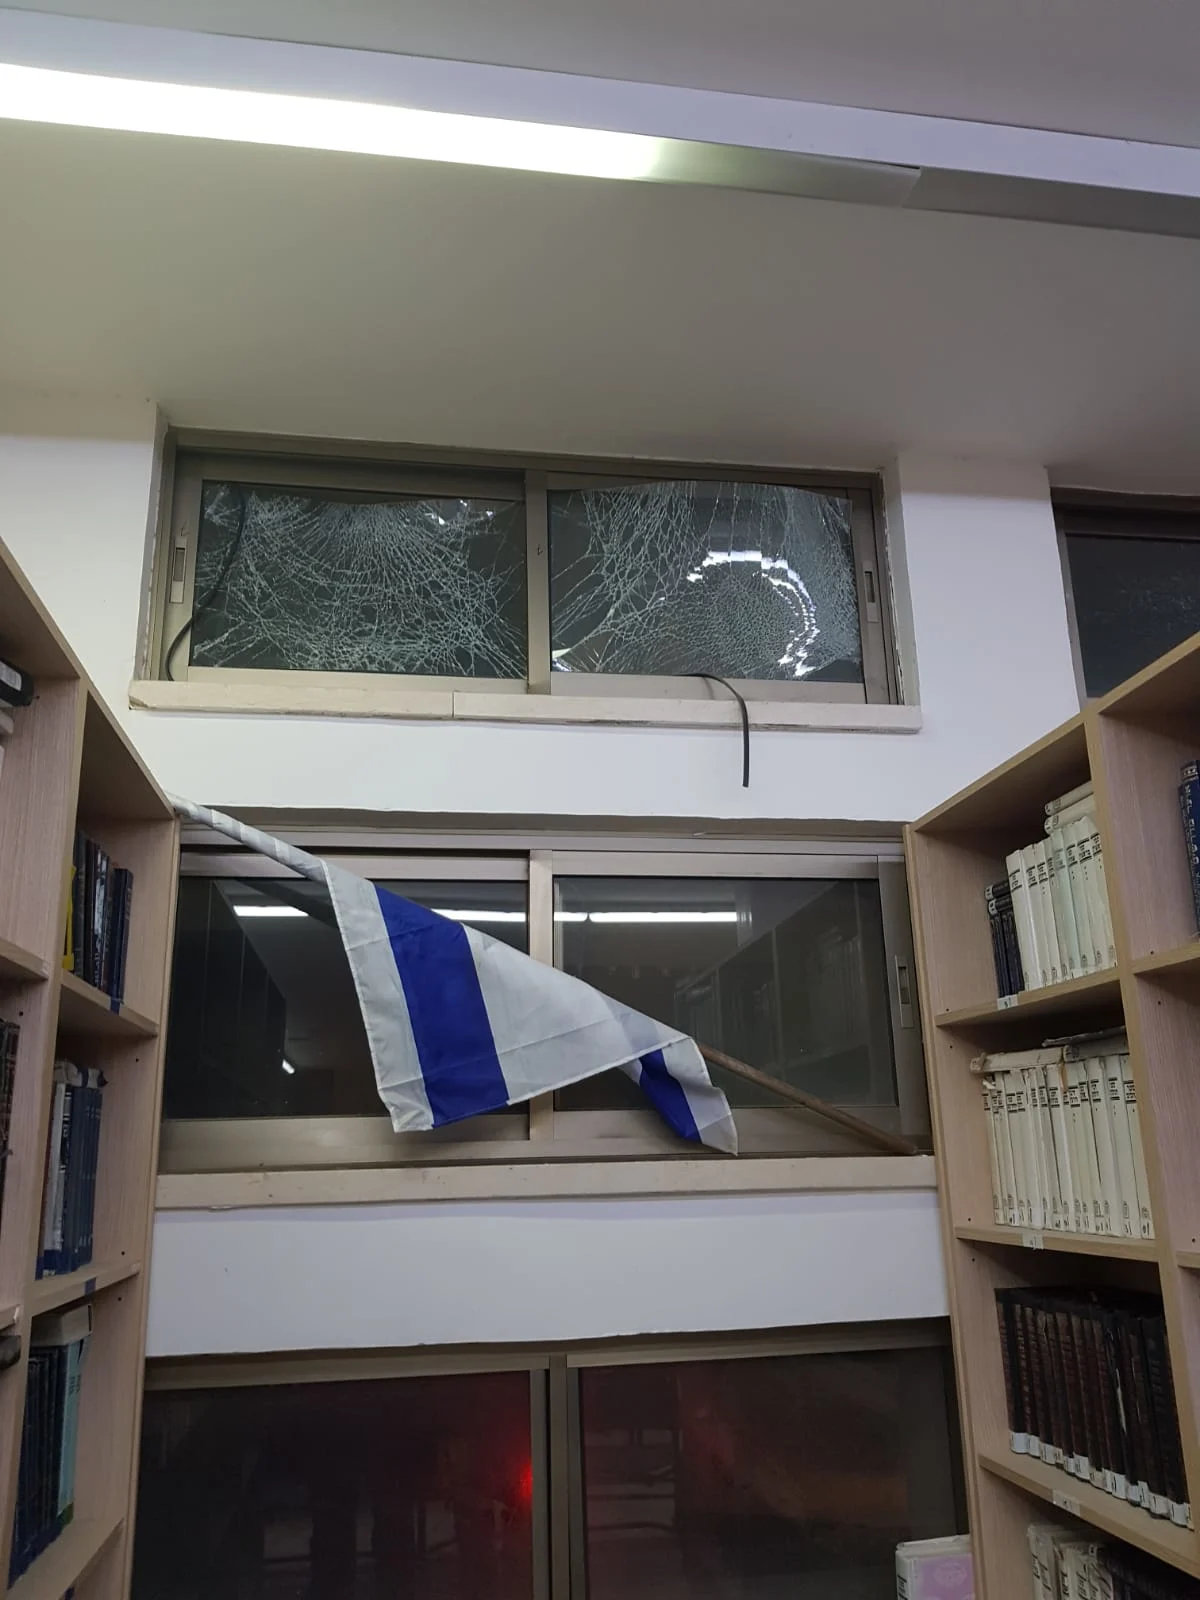 תוצאות הפגיעה הישירה בבניין ישיבת לב לדעת ליד בית חב''ד, שדרות